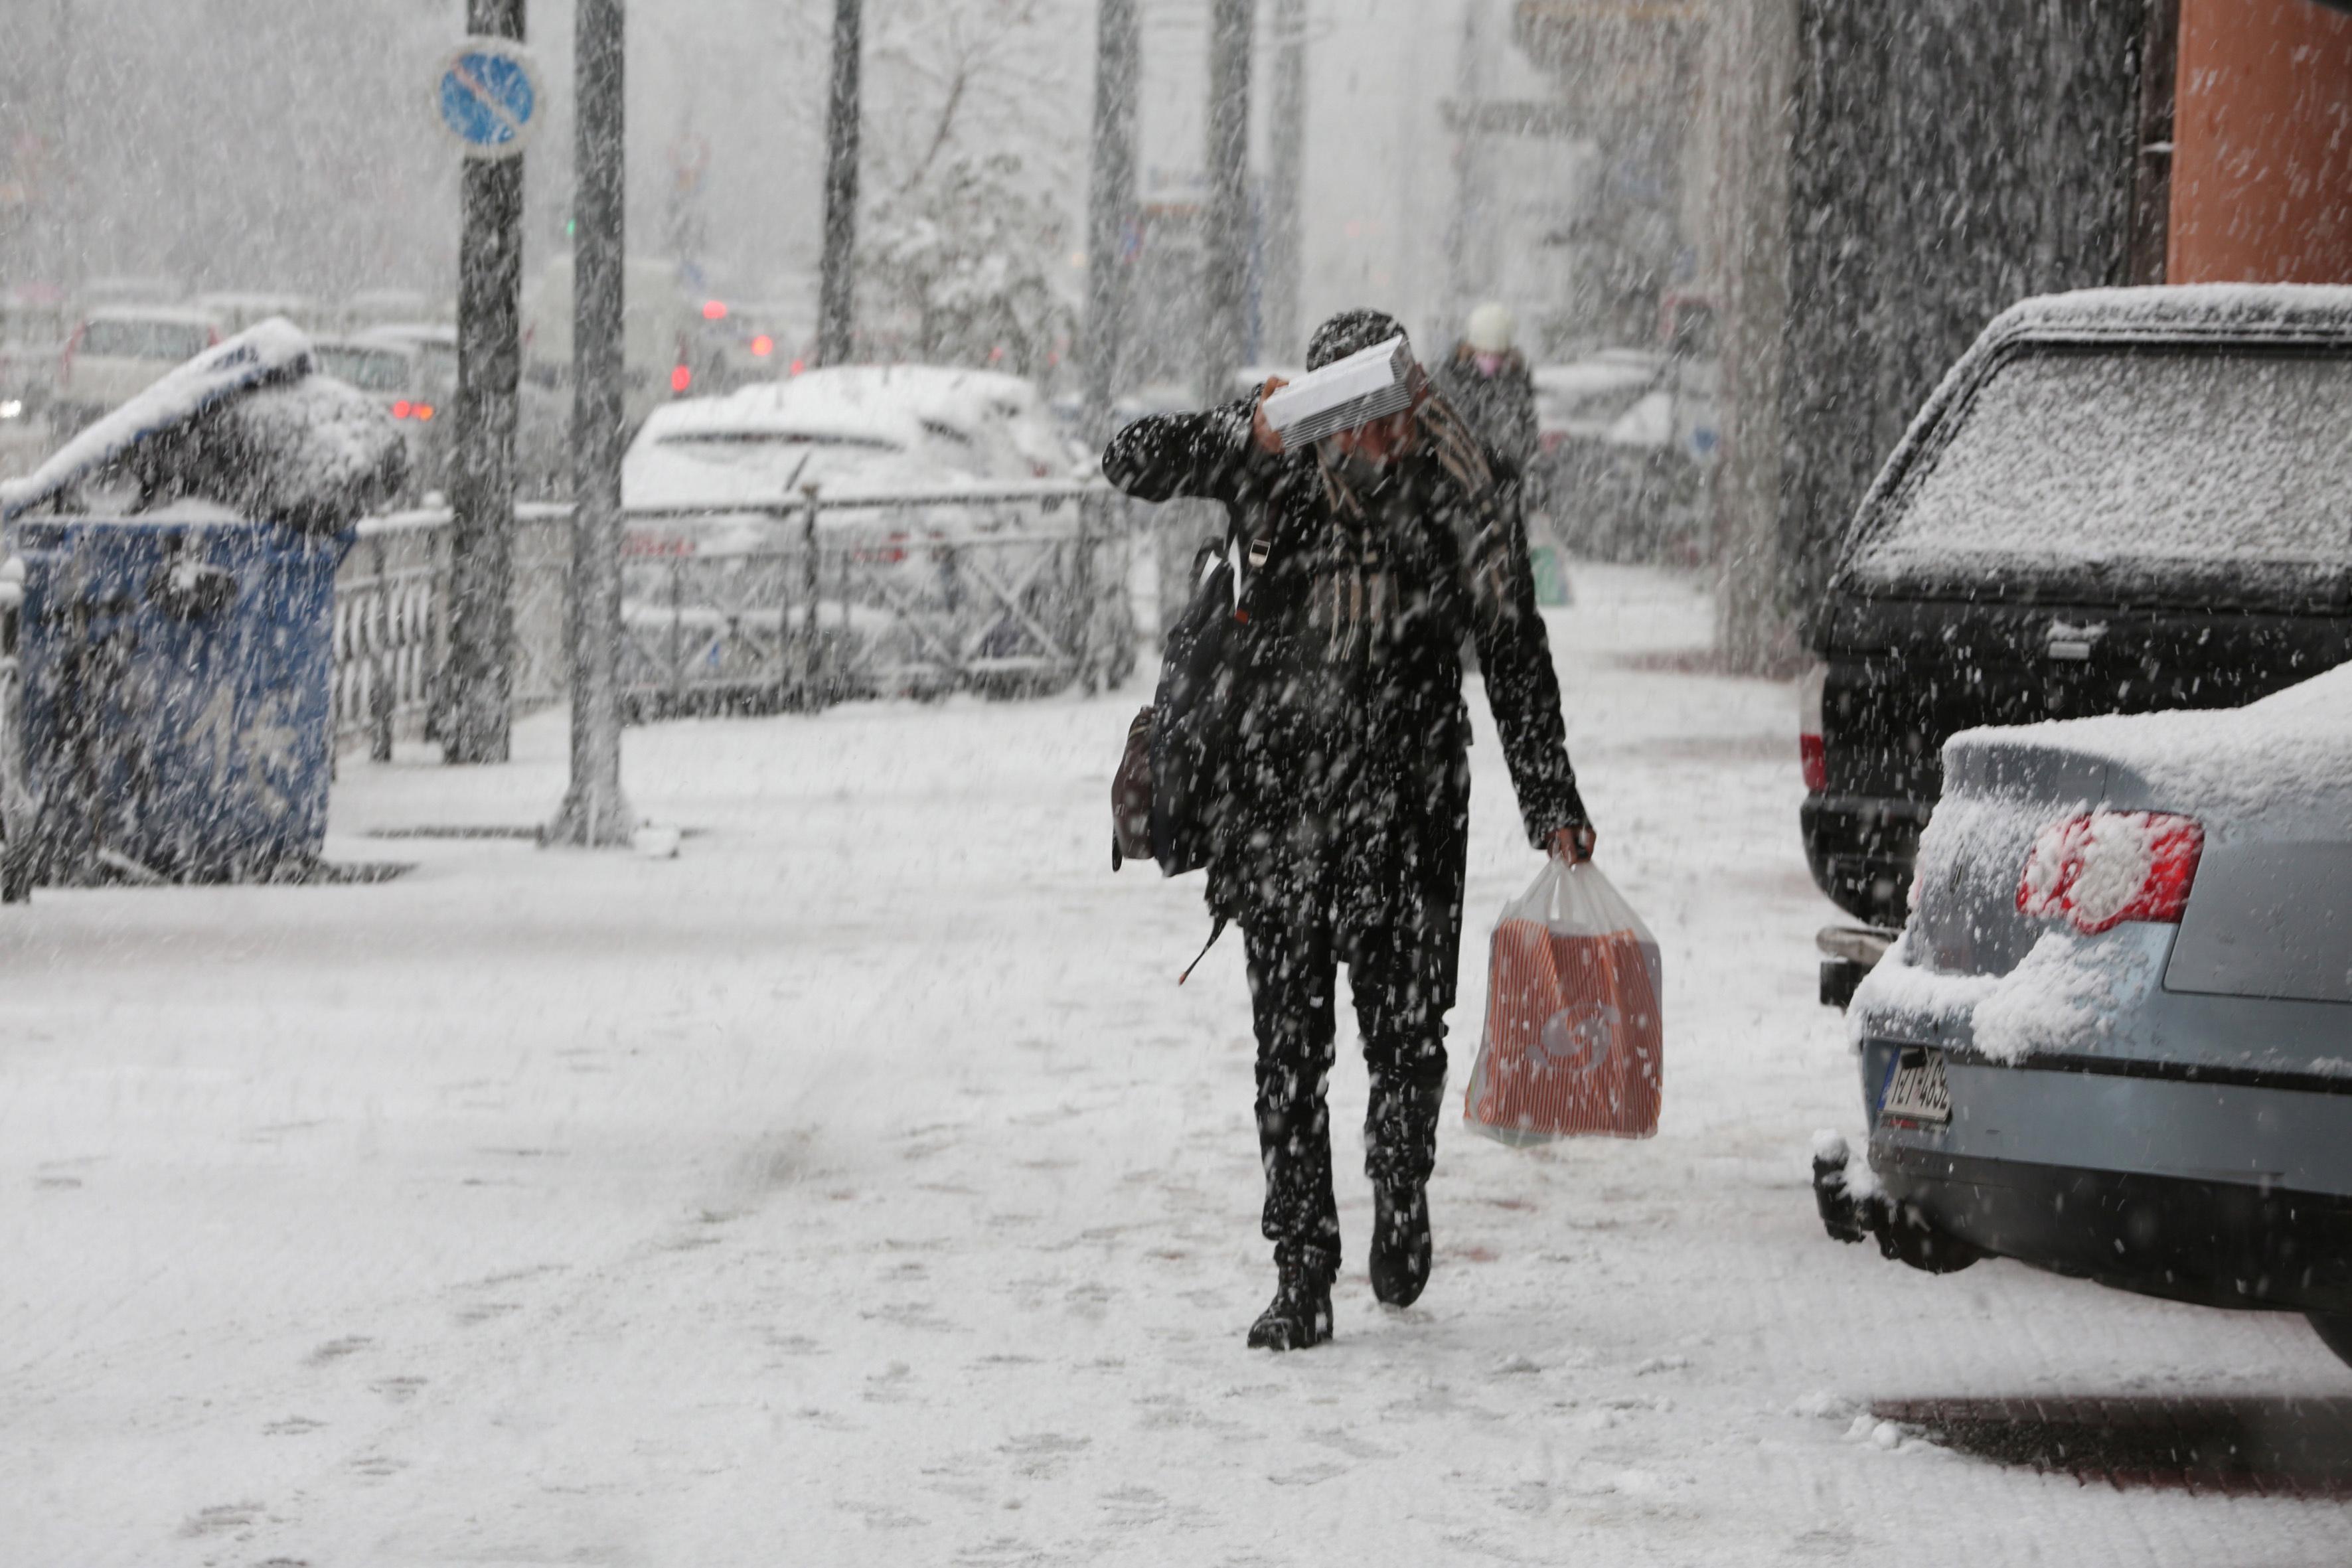 Yunanistanı kar fırtınası vurdu Ordu yardıma çağrıldı